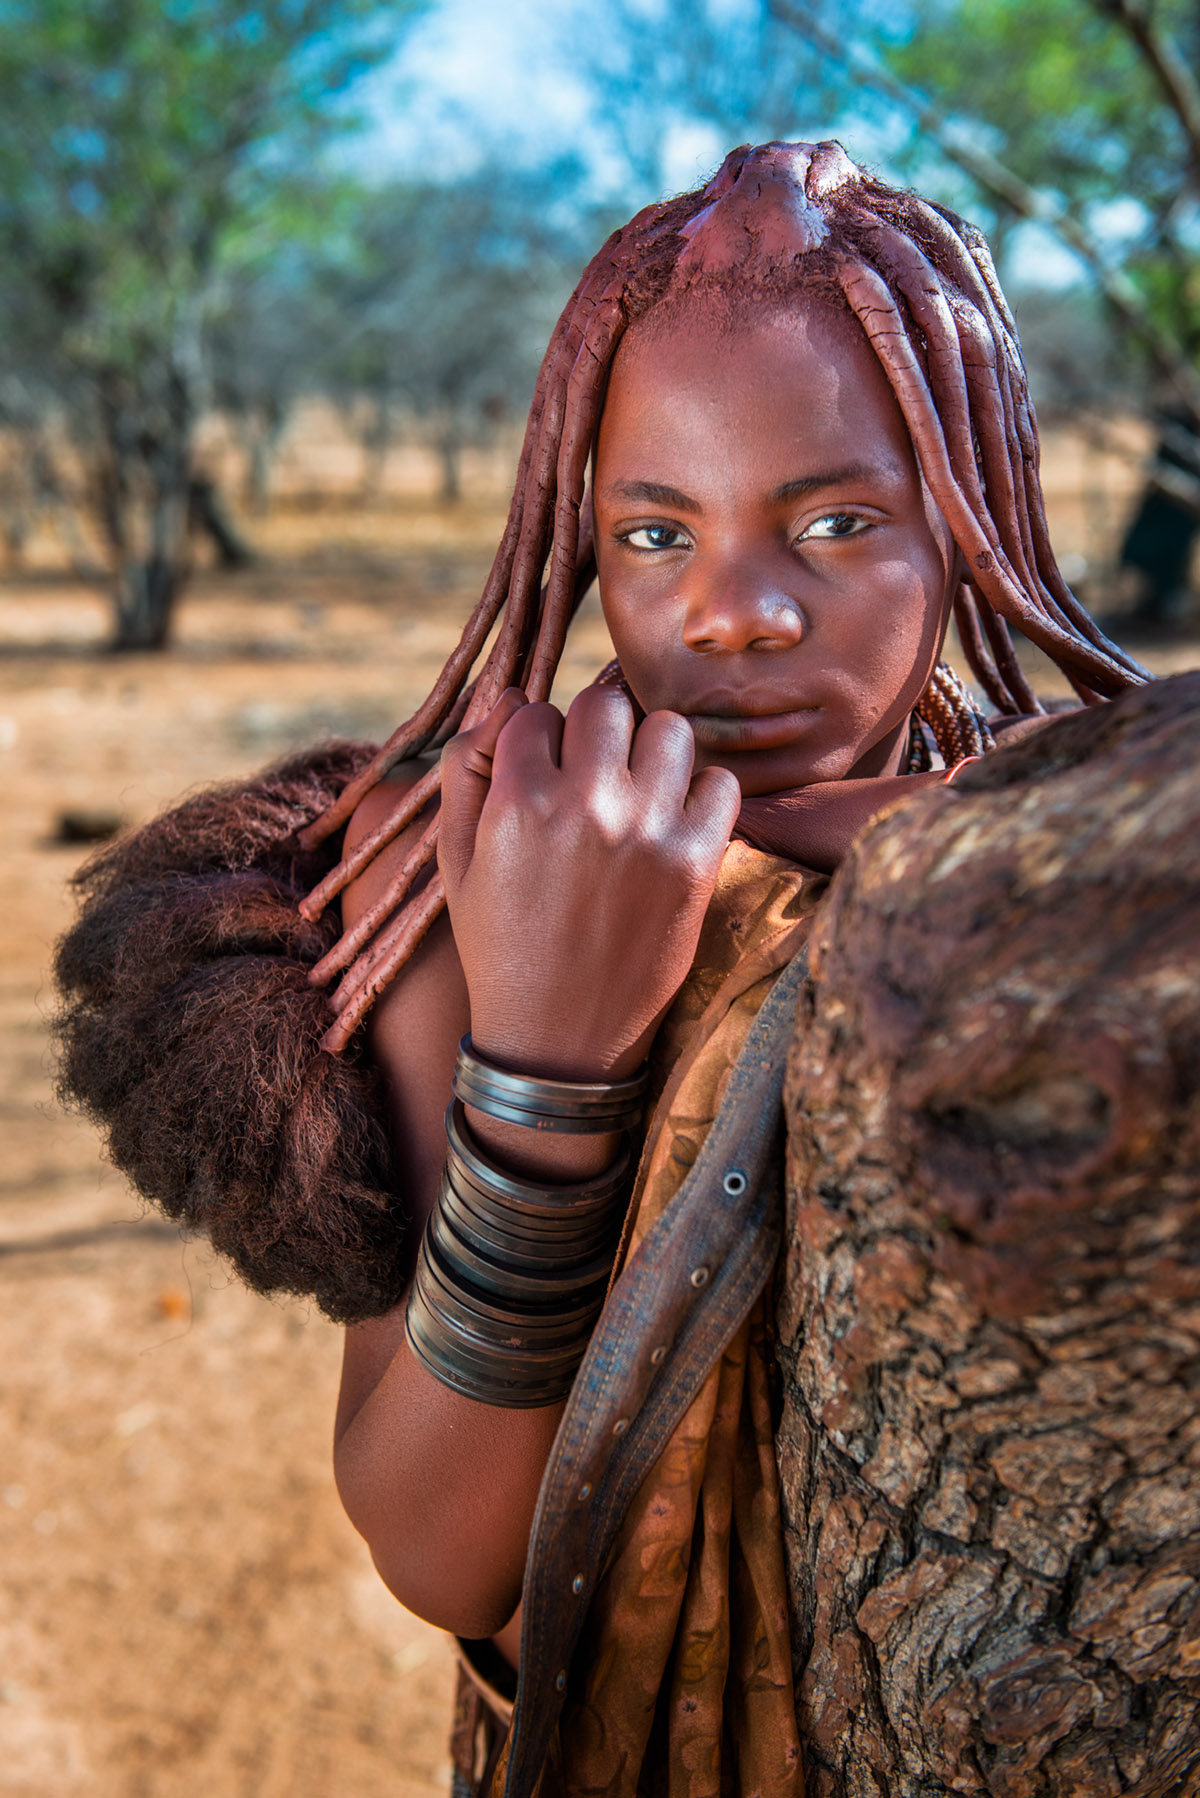 Tribe himba pro. Племя Химба женщины. Девушки племени Химба. Племя Химба женщины в полный. Девушки племени Химба в полный рост.